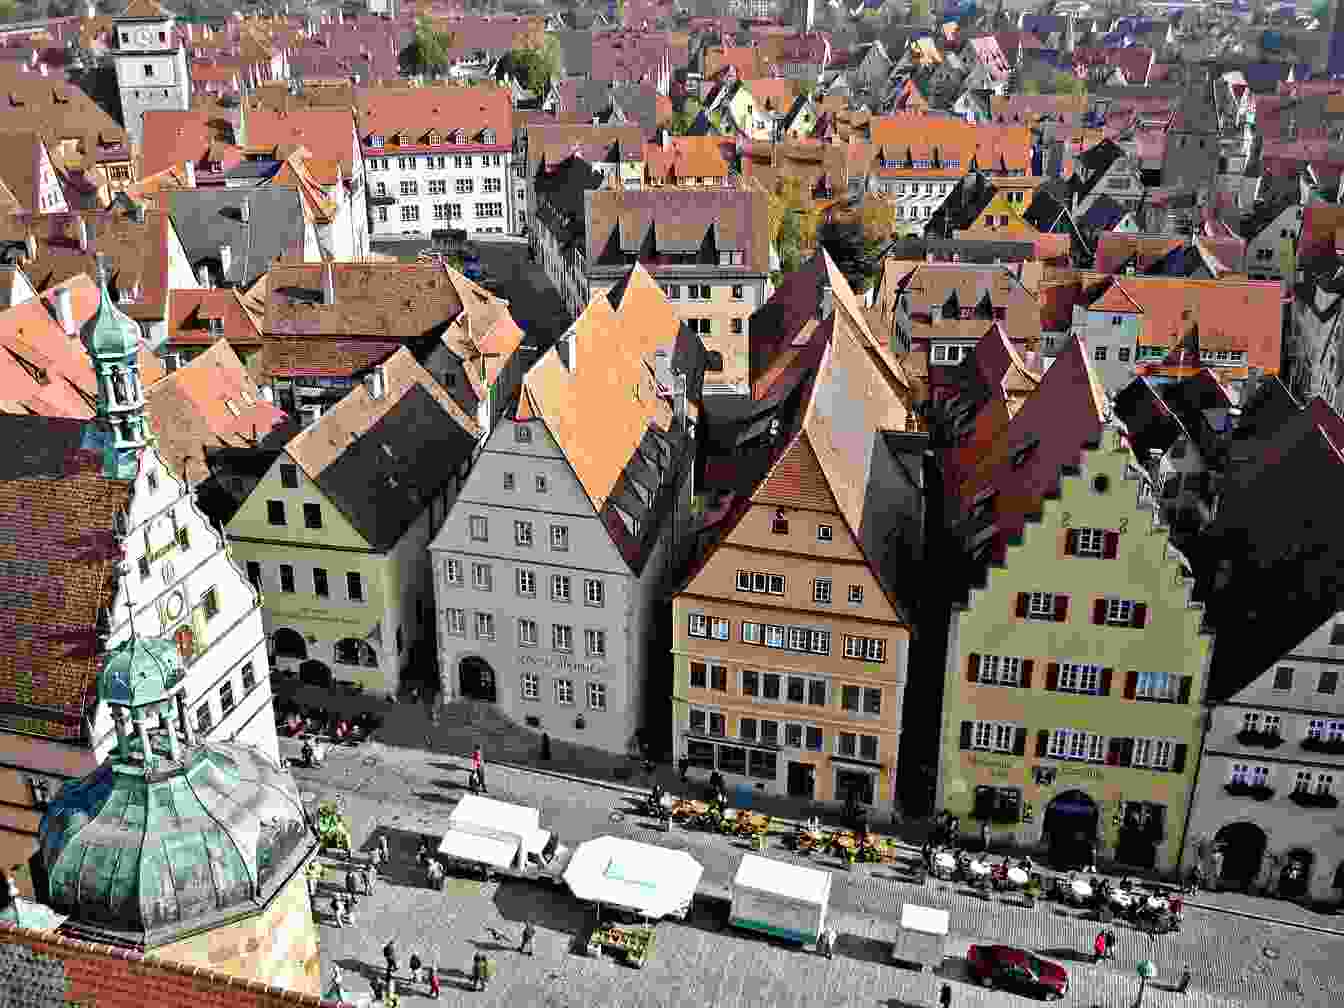 Bild der Stadt Rothenburg ob der Tauber